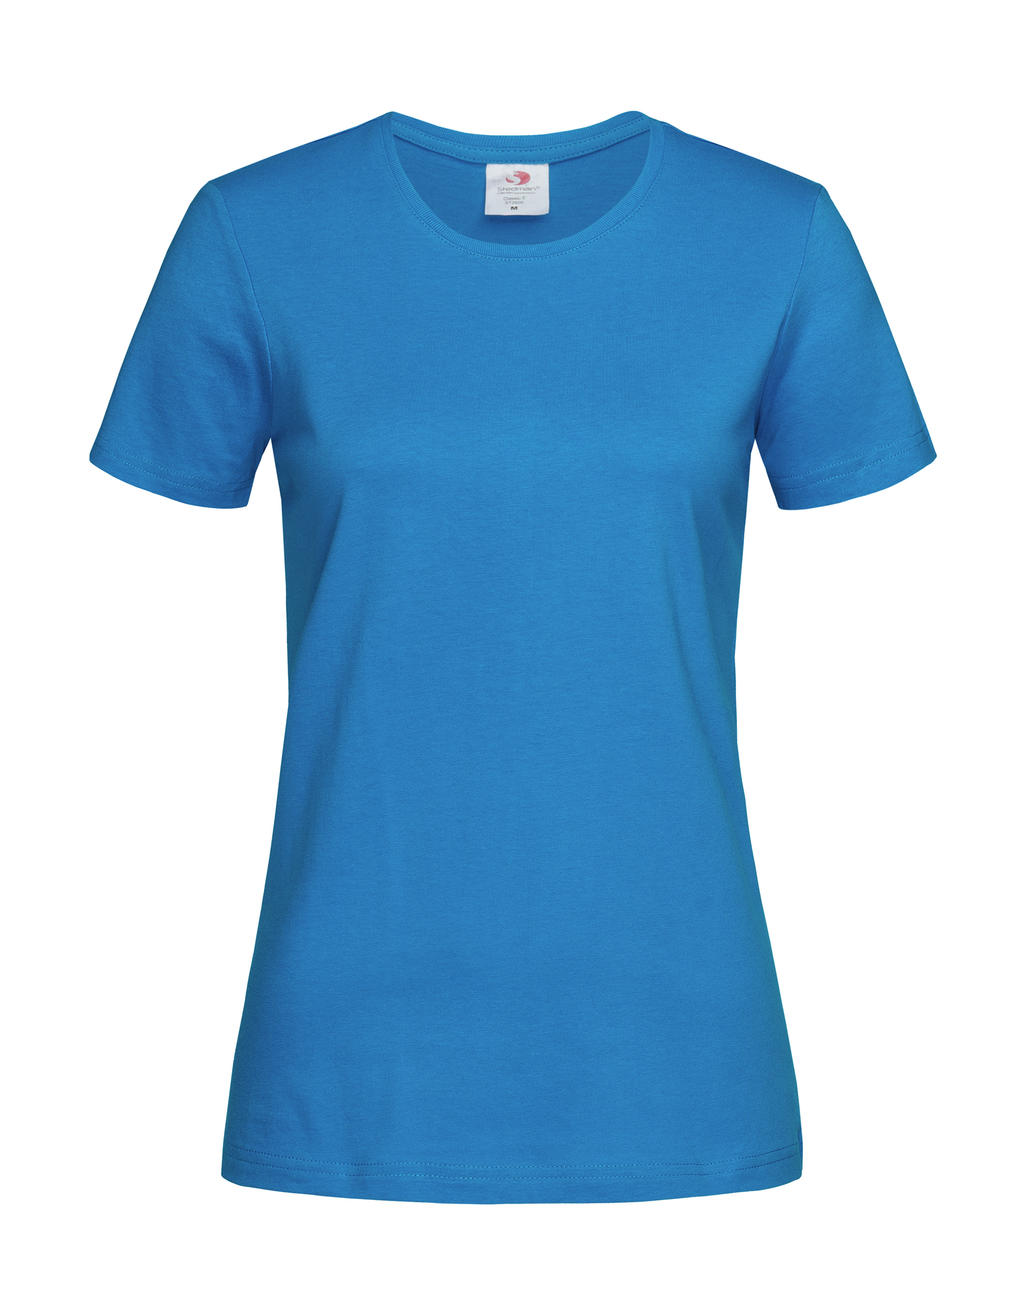 Tričko dámské Stedman Fitted s kulatým výstřihem - ocean blue, S